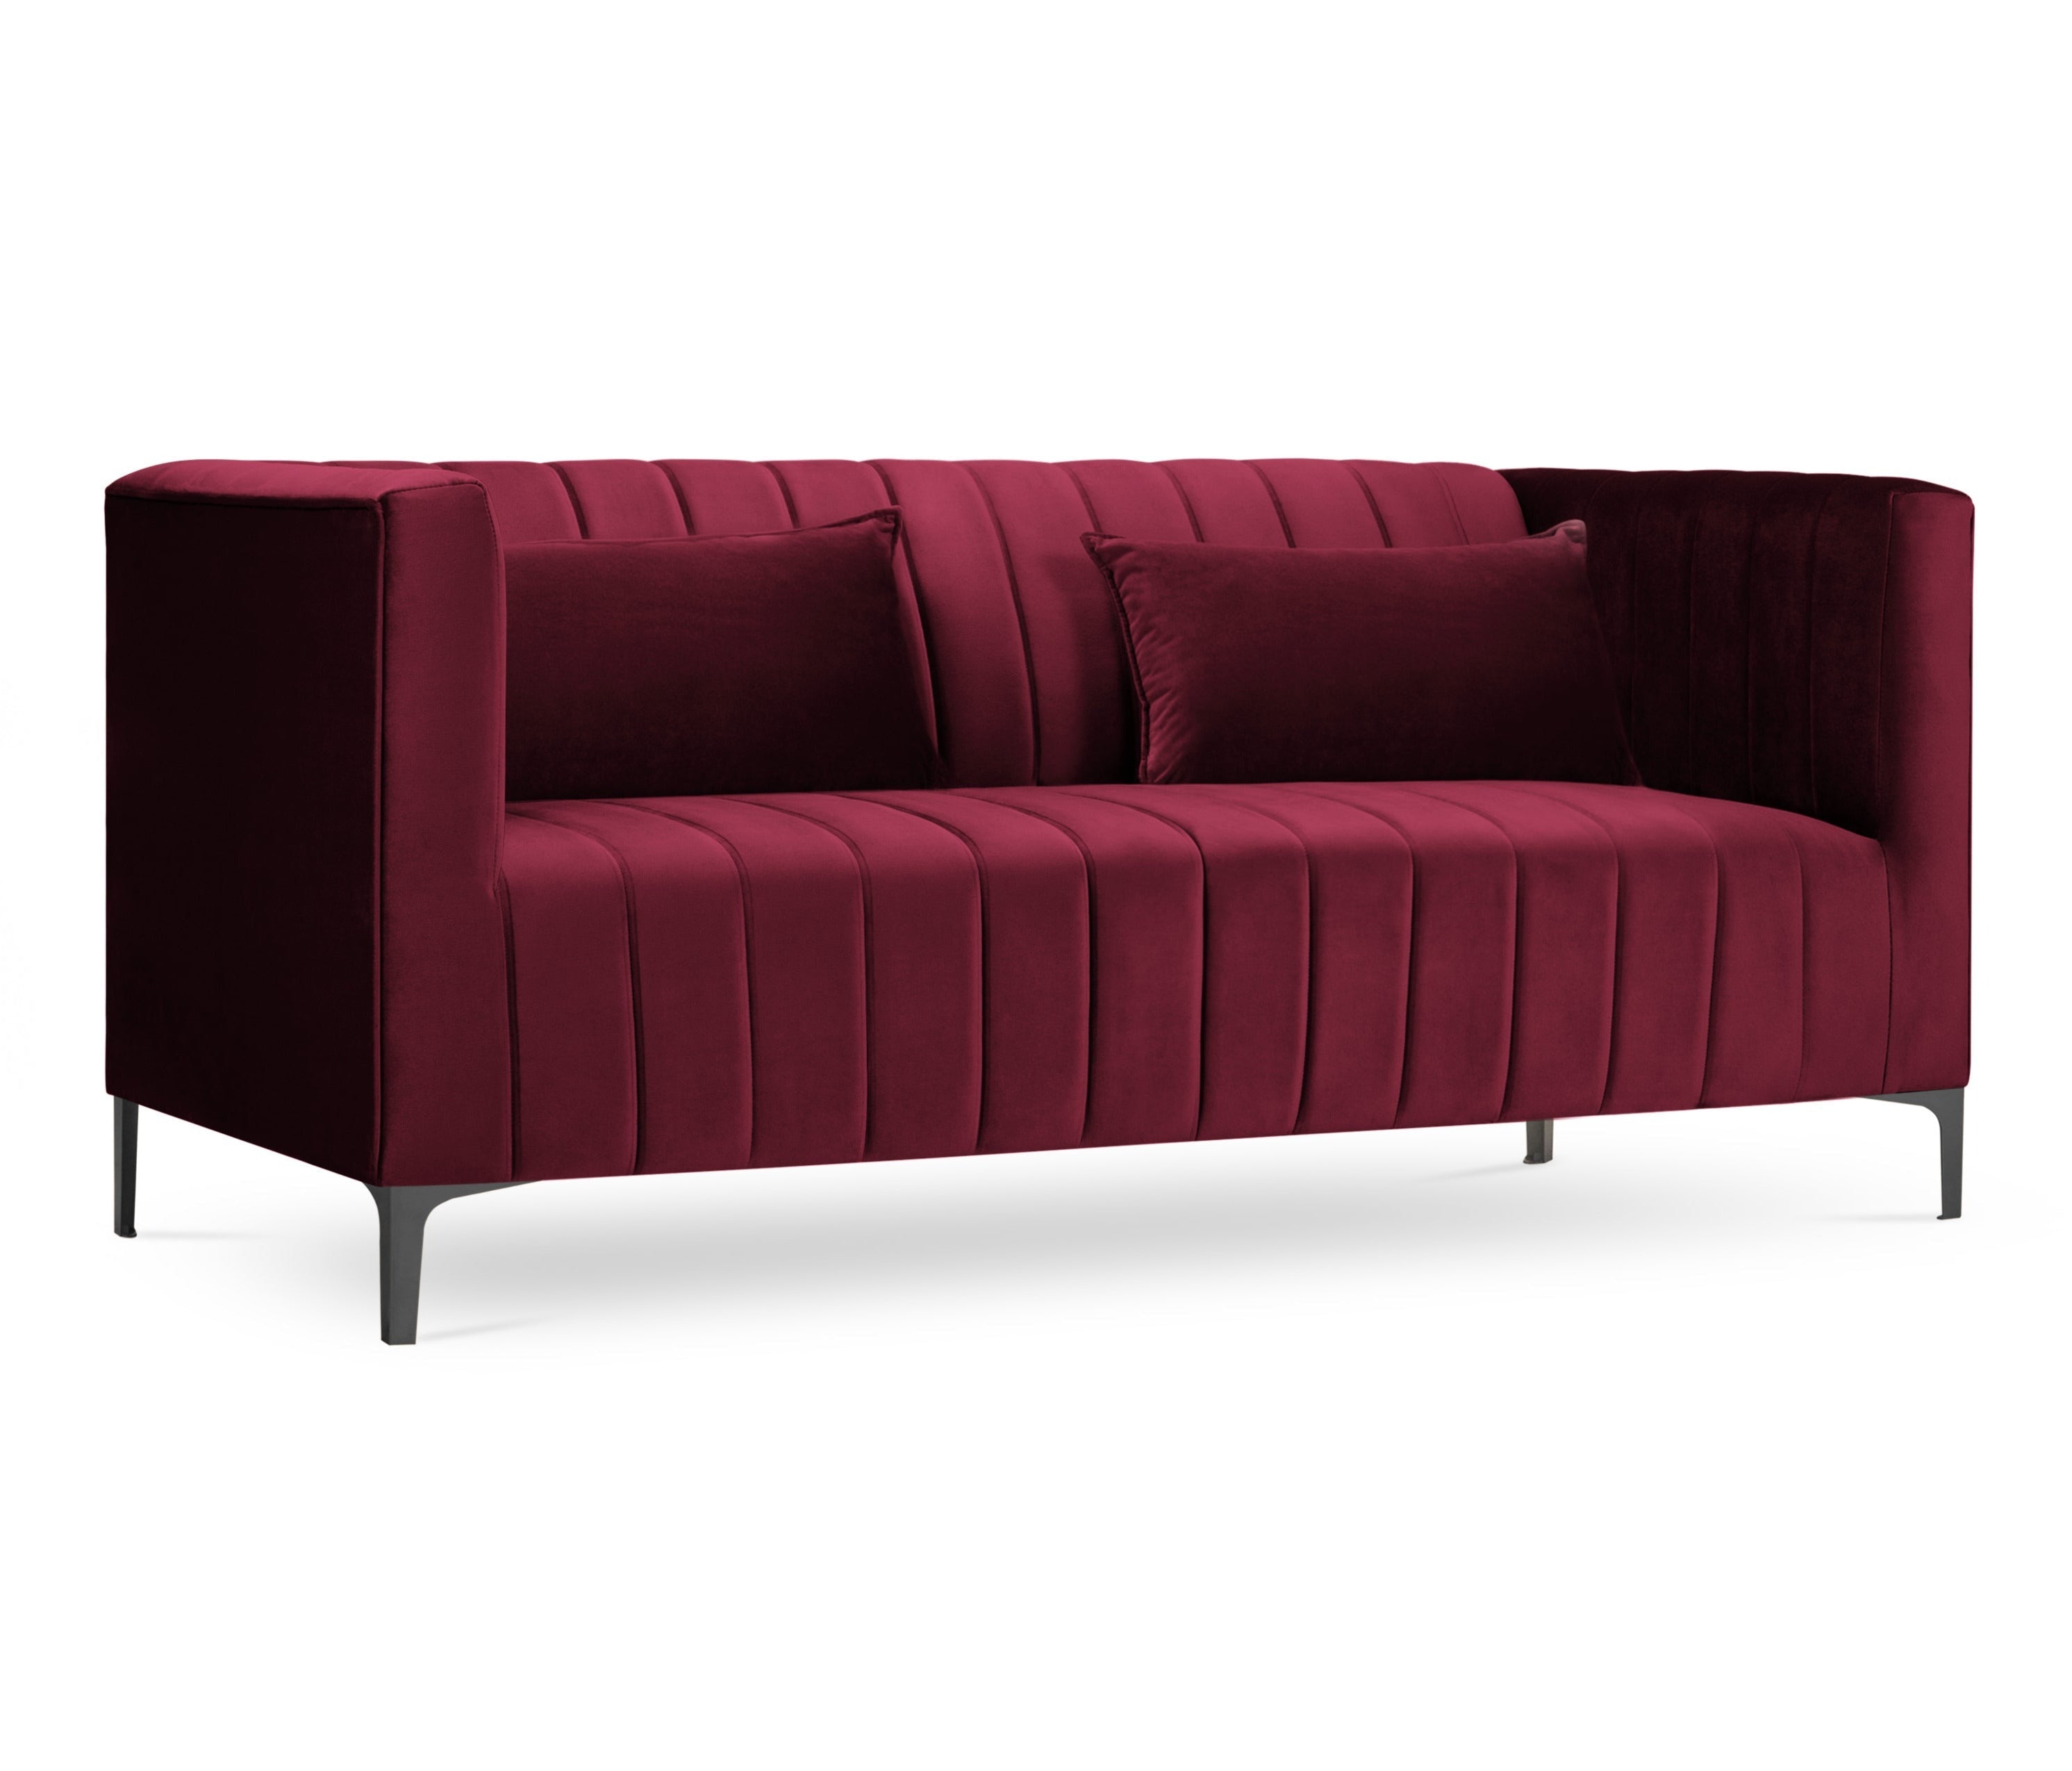 2-person sofa velvet dark red annite